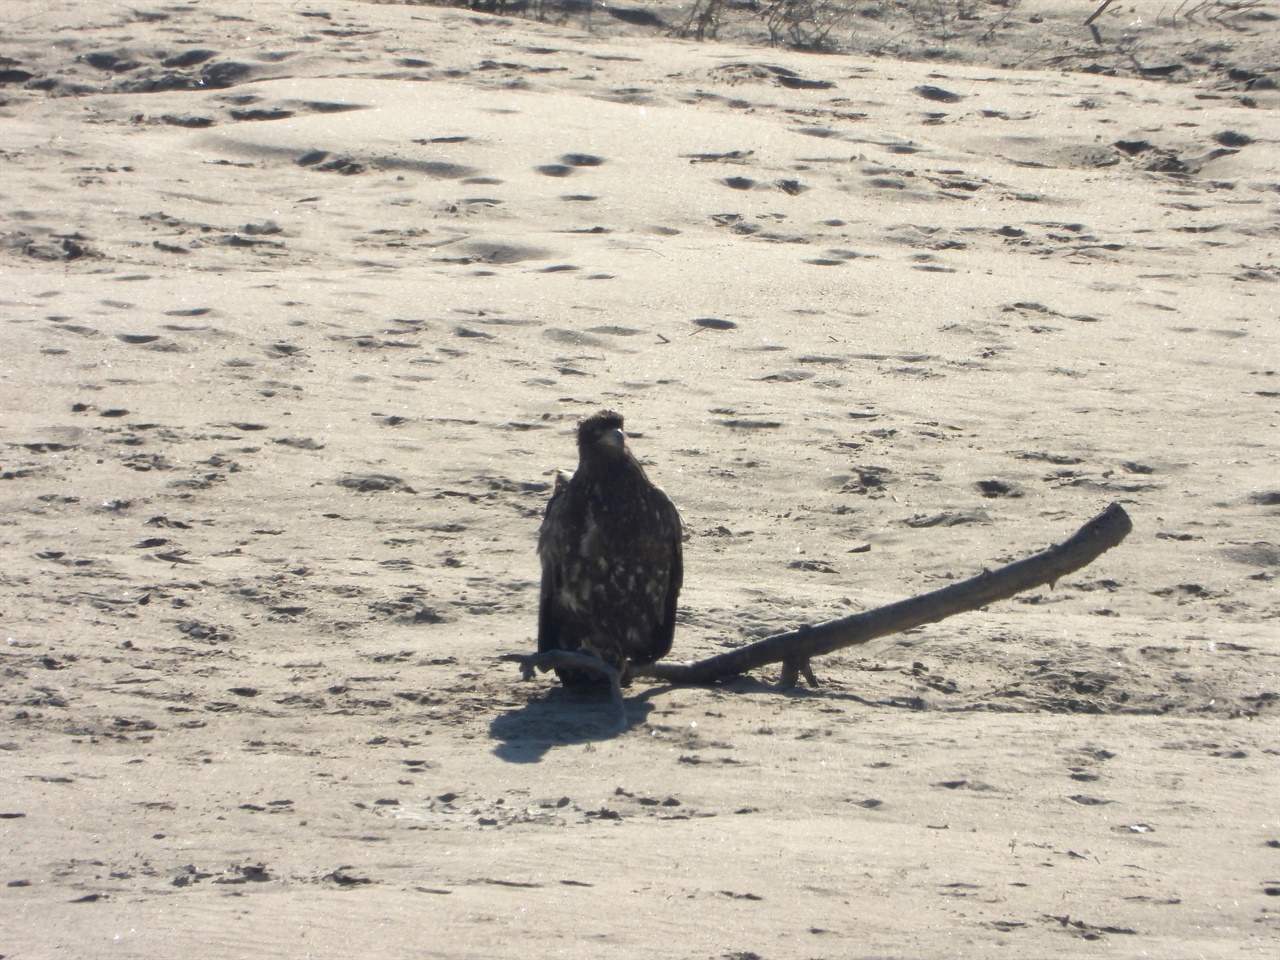 천연기념물 제243-4호인 흰꼬리수리가 모래톱에 앉아 깃털을 다듬으며 휴식을 취하고 있다.